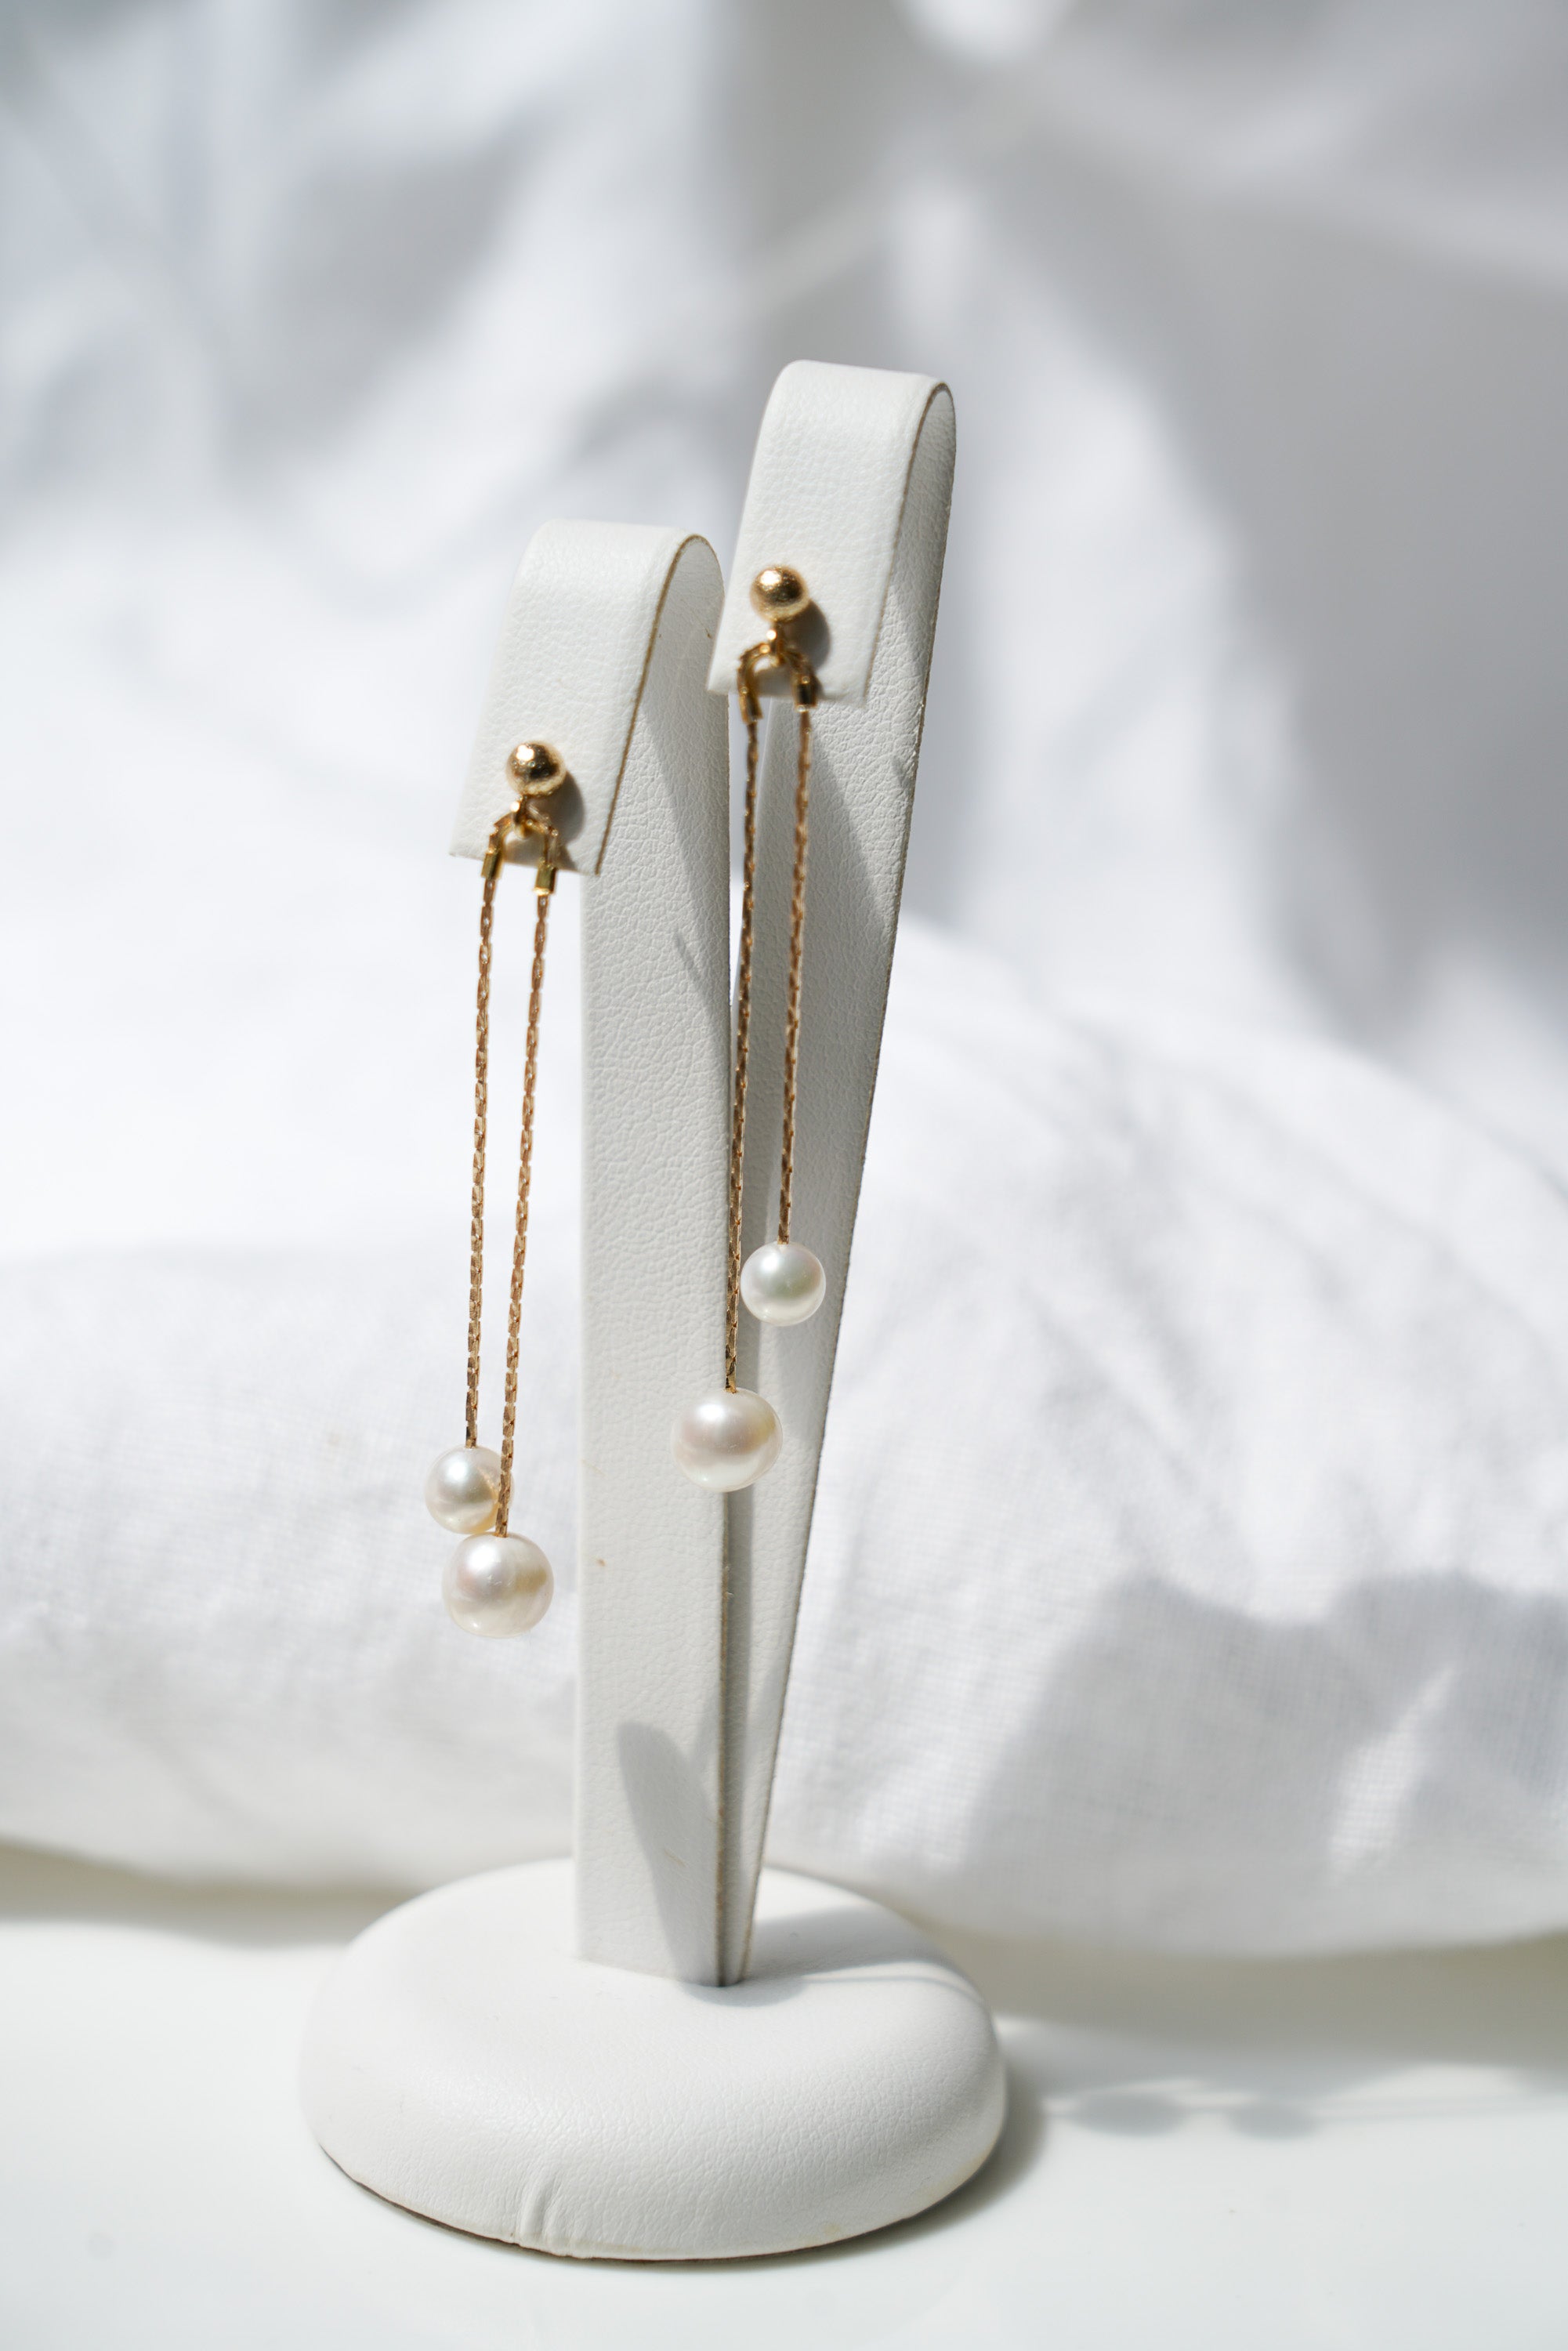 Paire de boucles d'oreilles pendantes dorées à double chaine et deux perles rondes blanches au bout